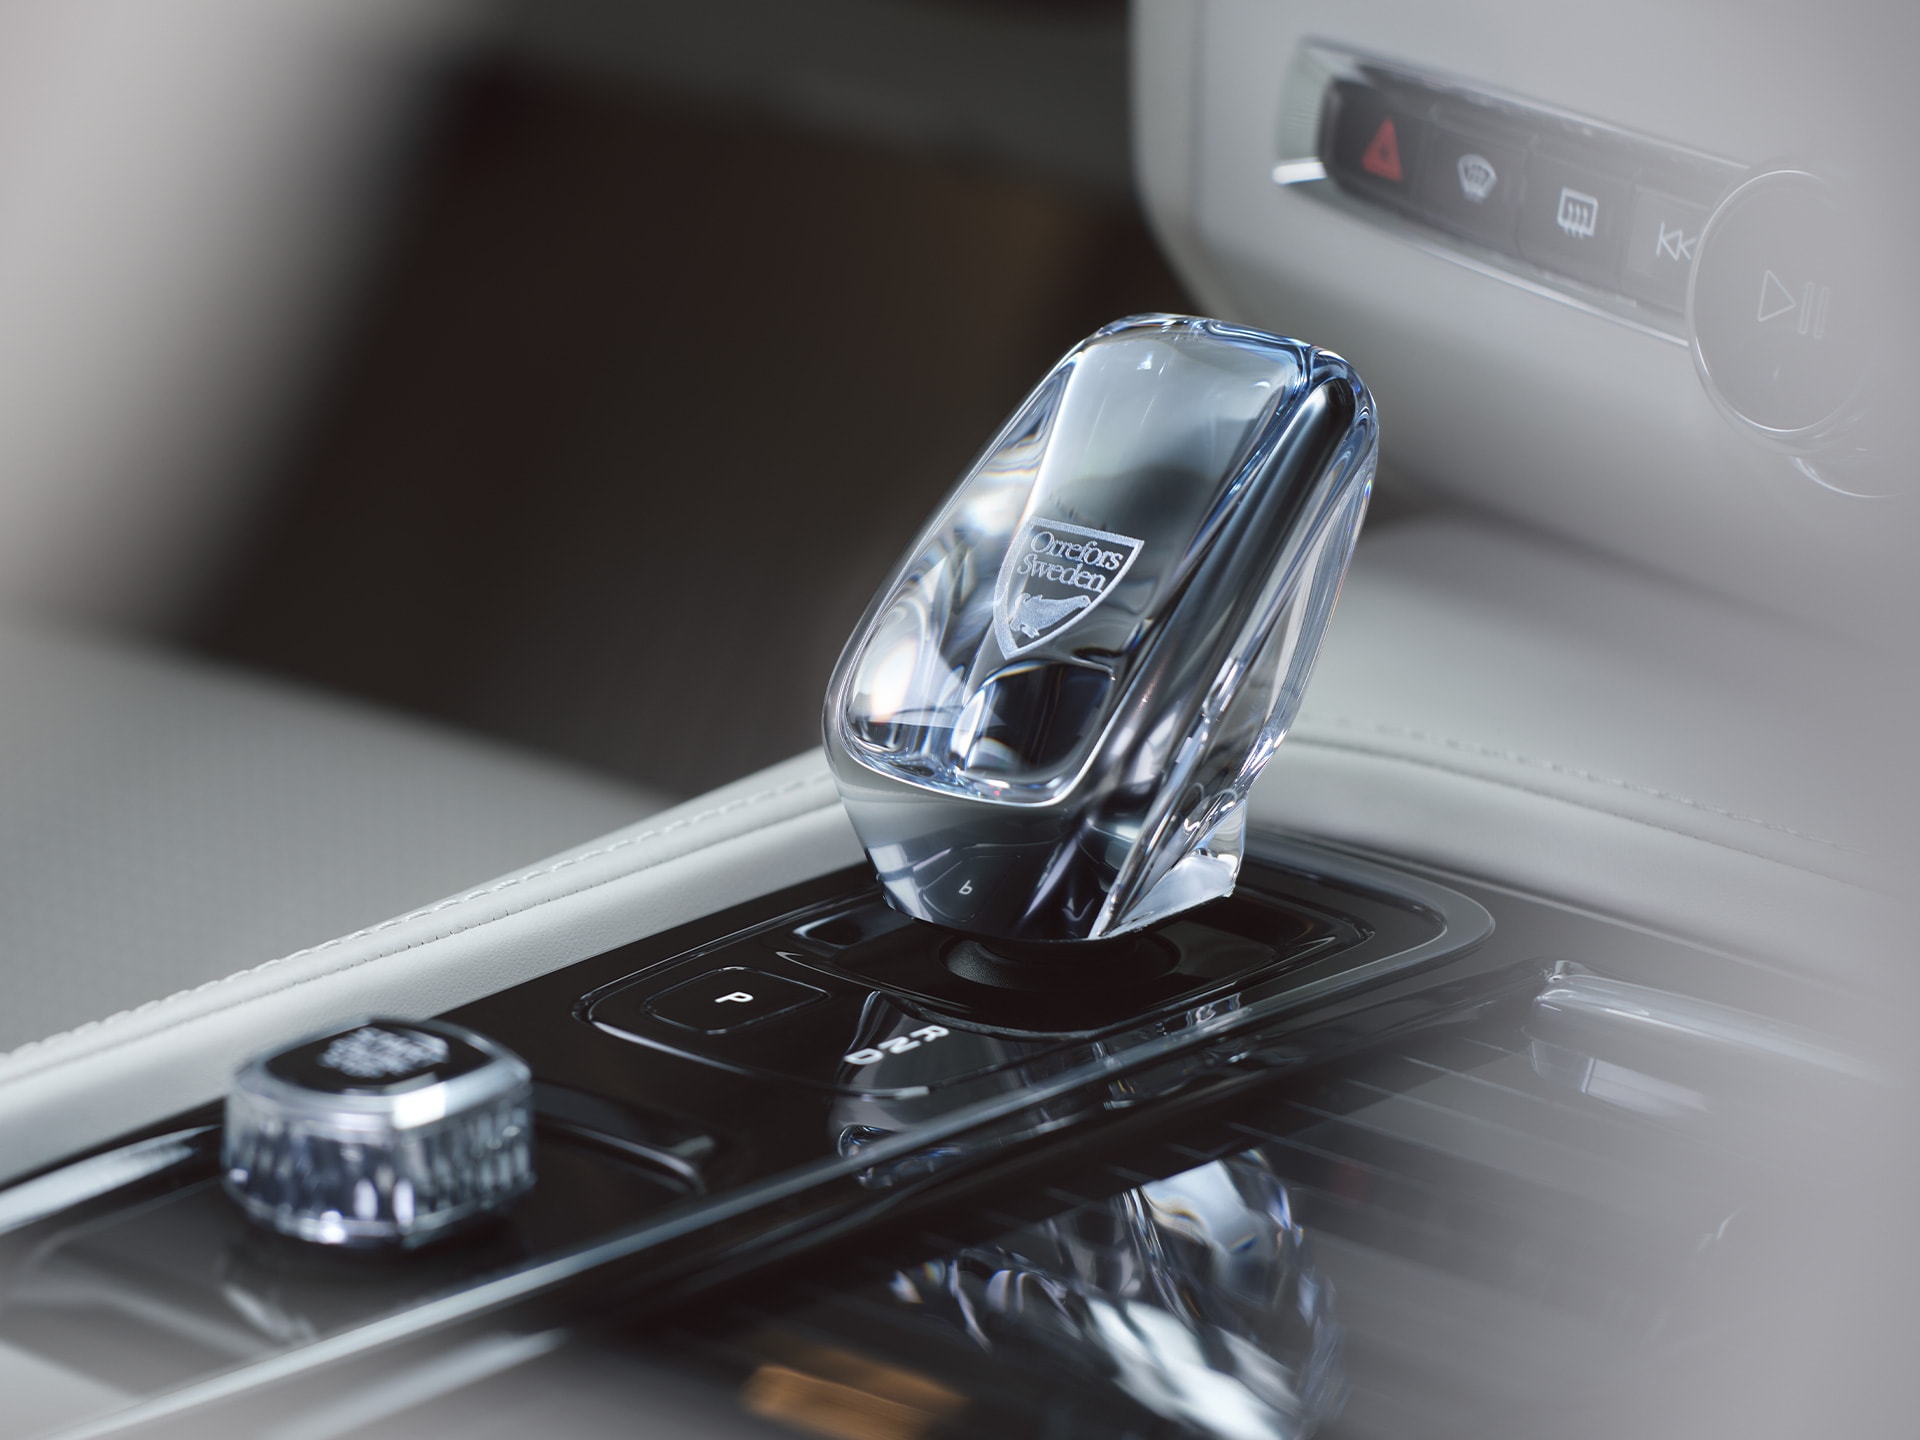 Levier de vitesse en véritable cristal suédois d'Orrefors dans une berline Volvo S90.